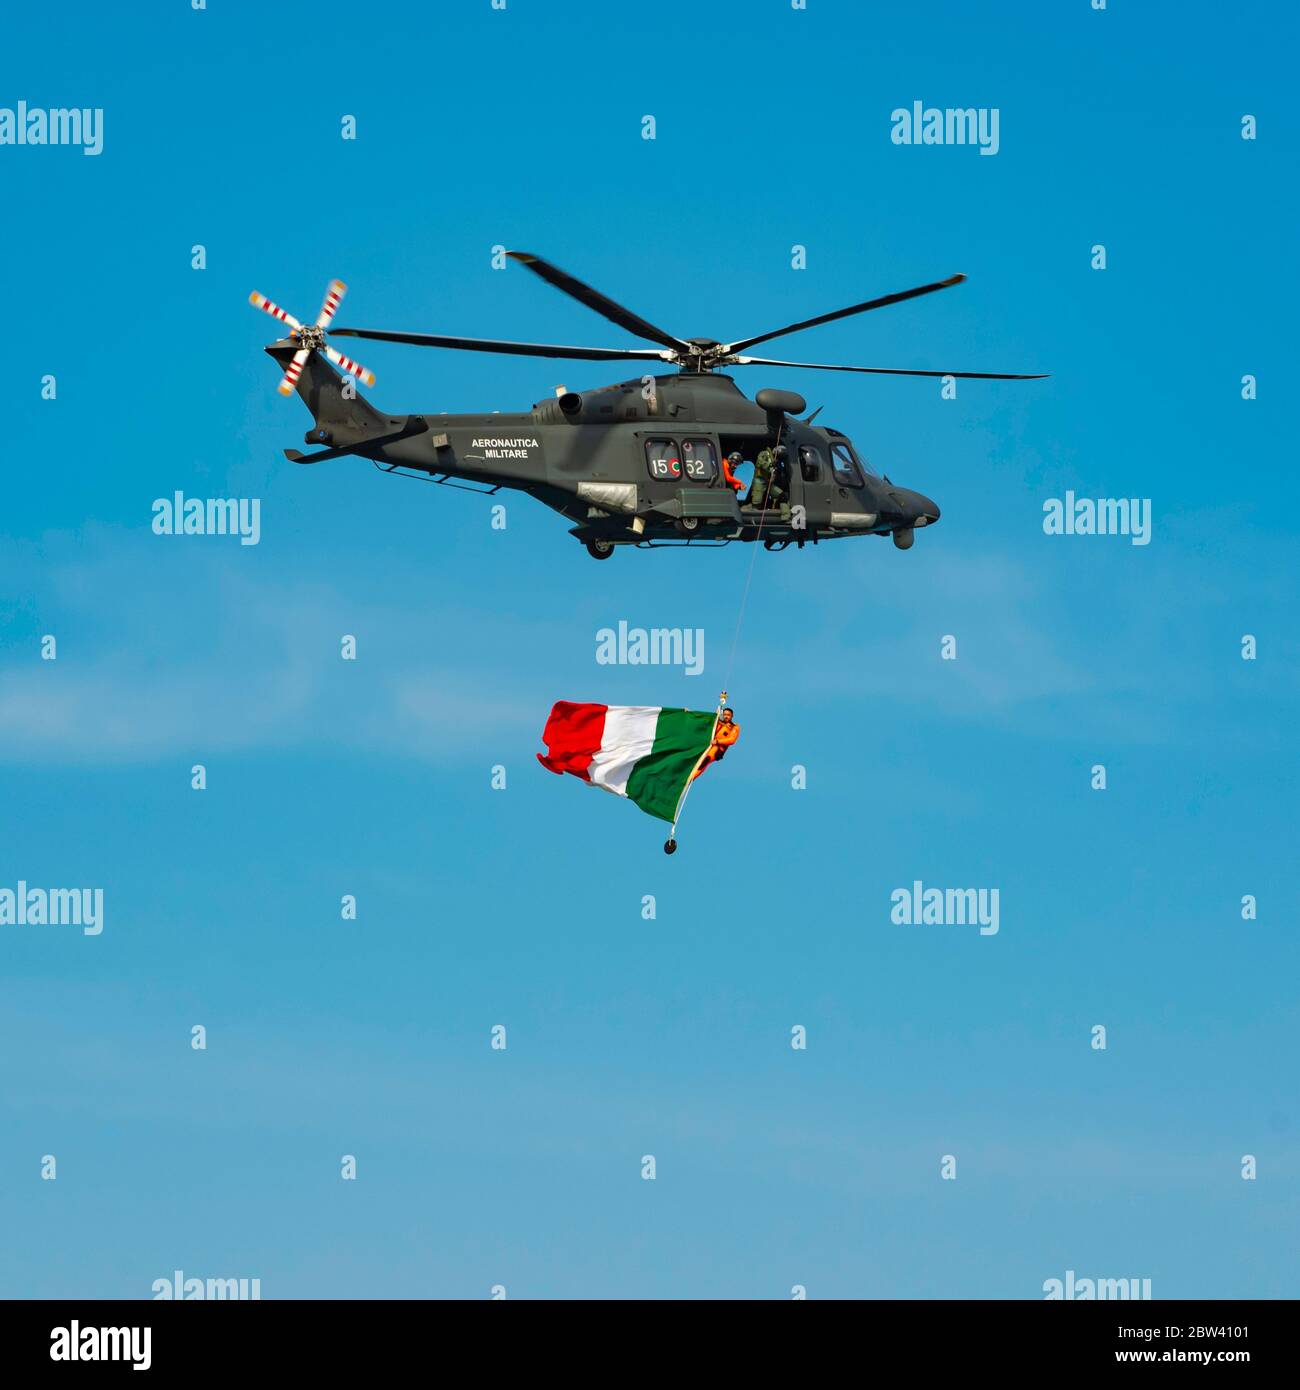 Bari, Italia - 8 de mayo de 2019: Exposición con helicóptero de rescate HH-139 - 84º centro SAR (búsqueda y rescate) en el espectáculo Bari (ITALIA) espectáculo aéreo en el f Foto de stock